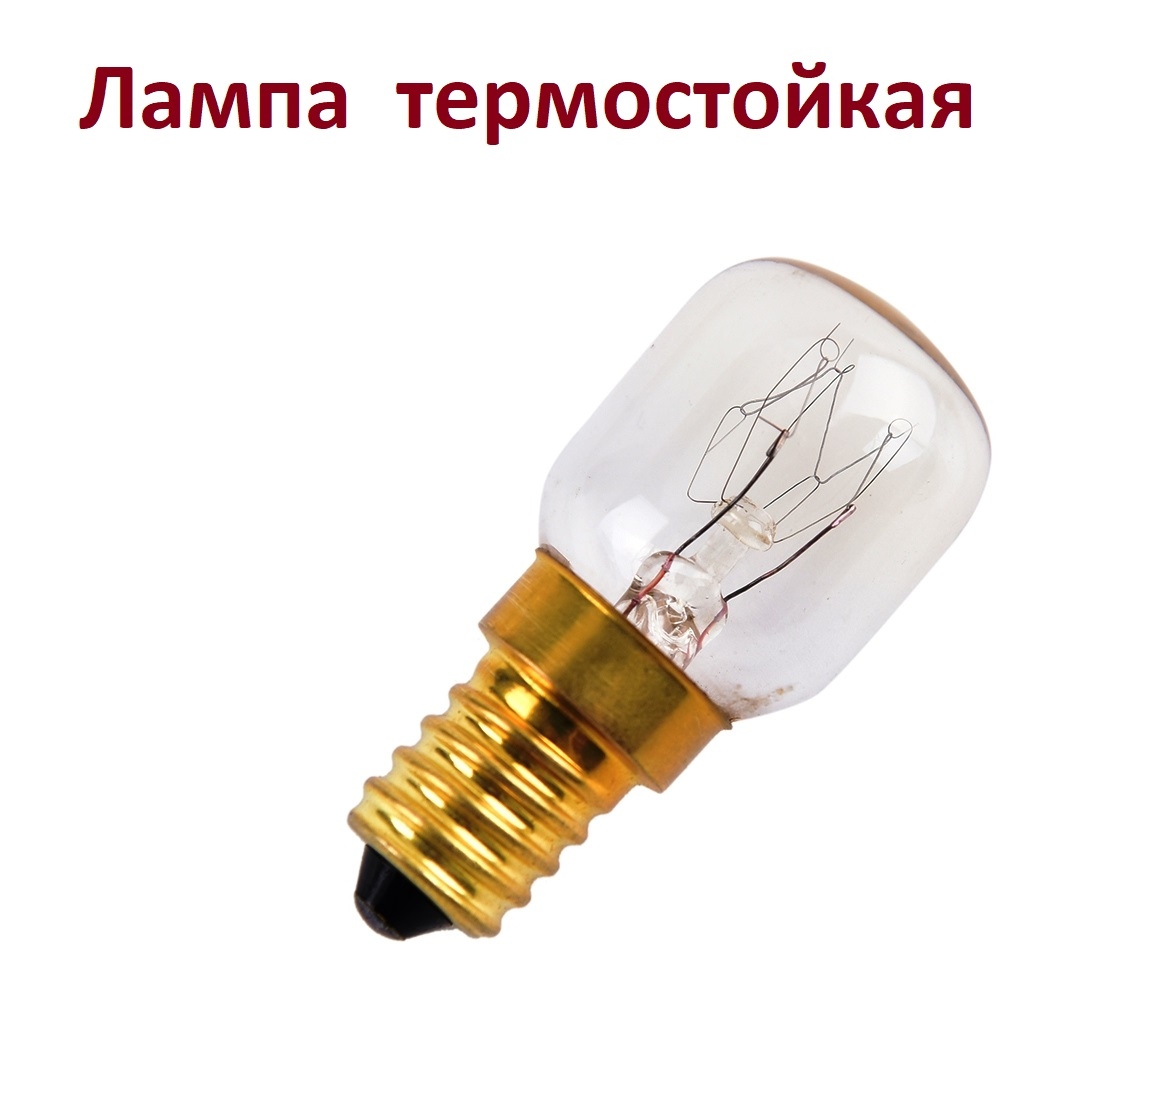  Лампочка термостойкая для духовых шкафов 300 °С 220V 15W, цоколь Е14